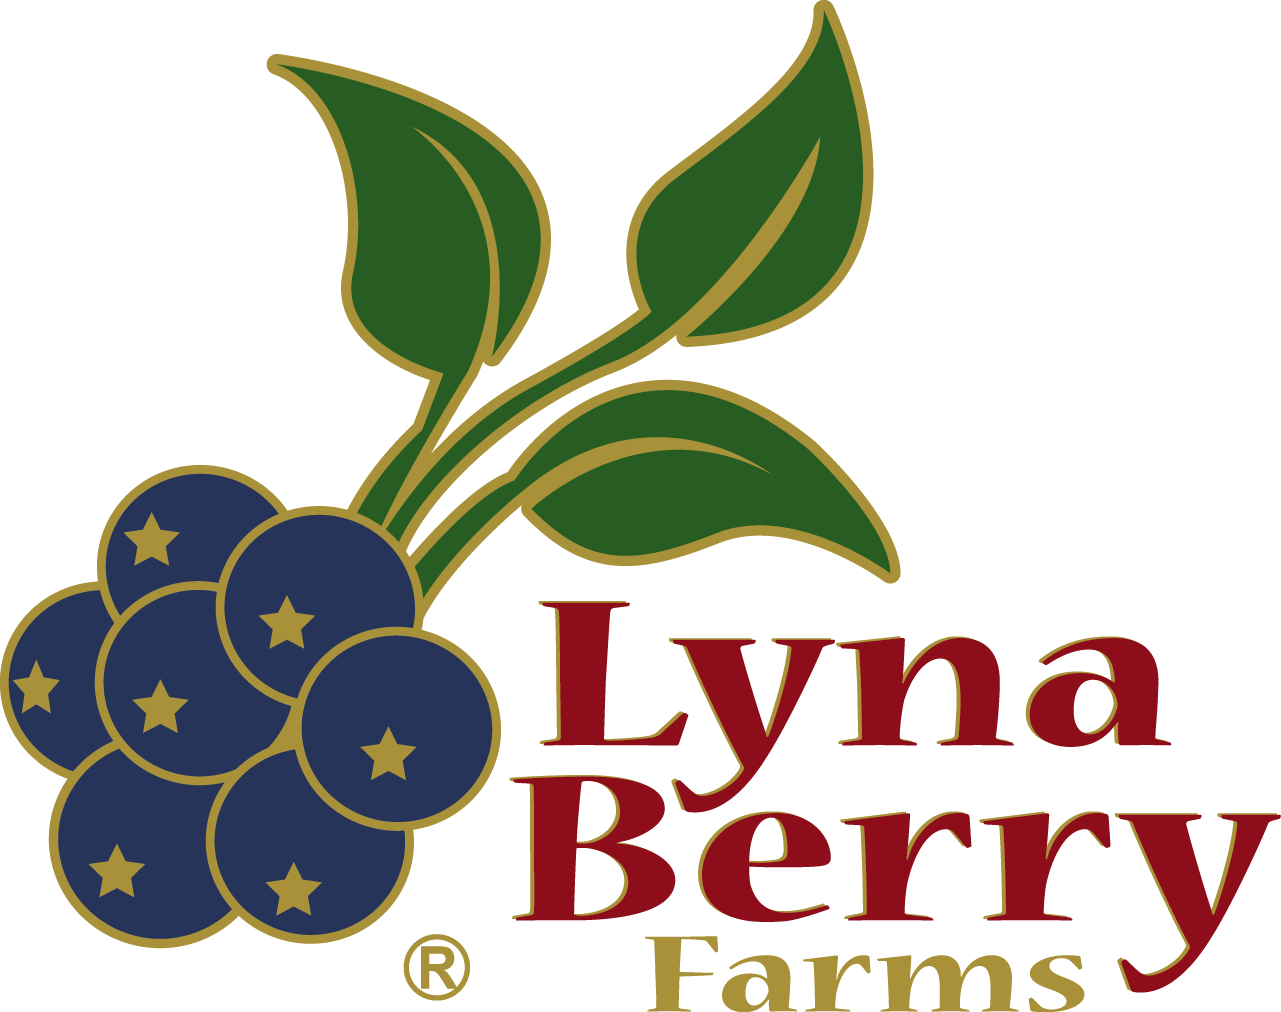 Lyna Berry Farms